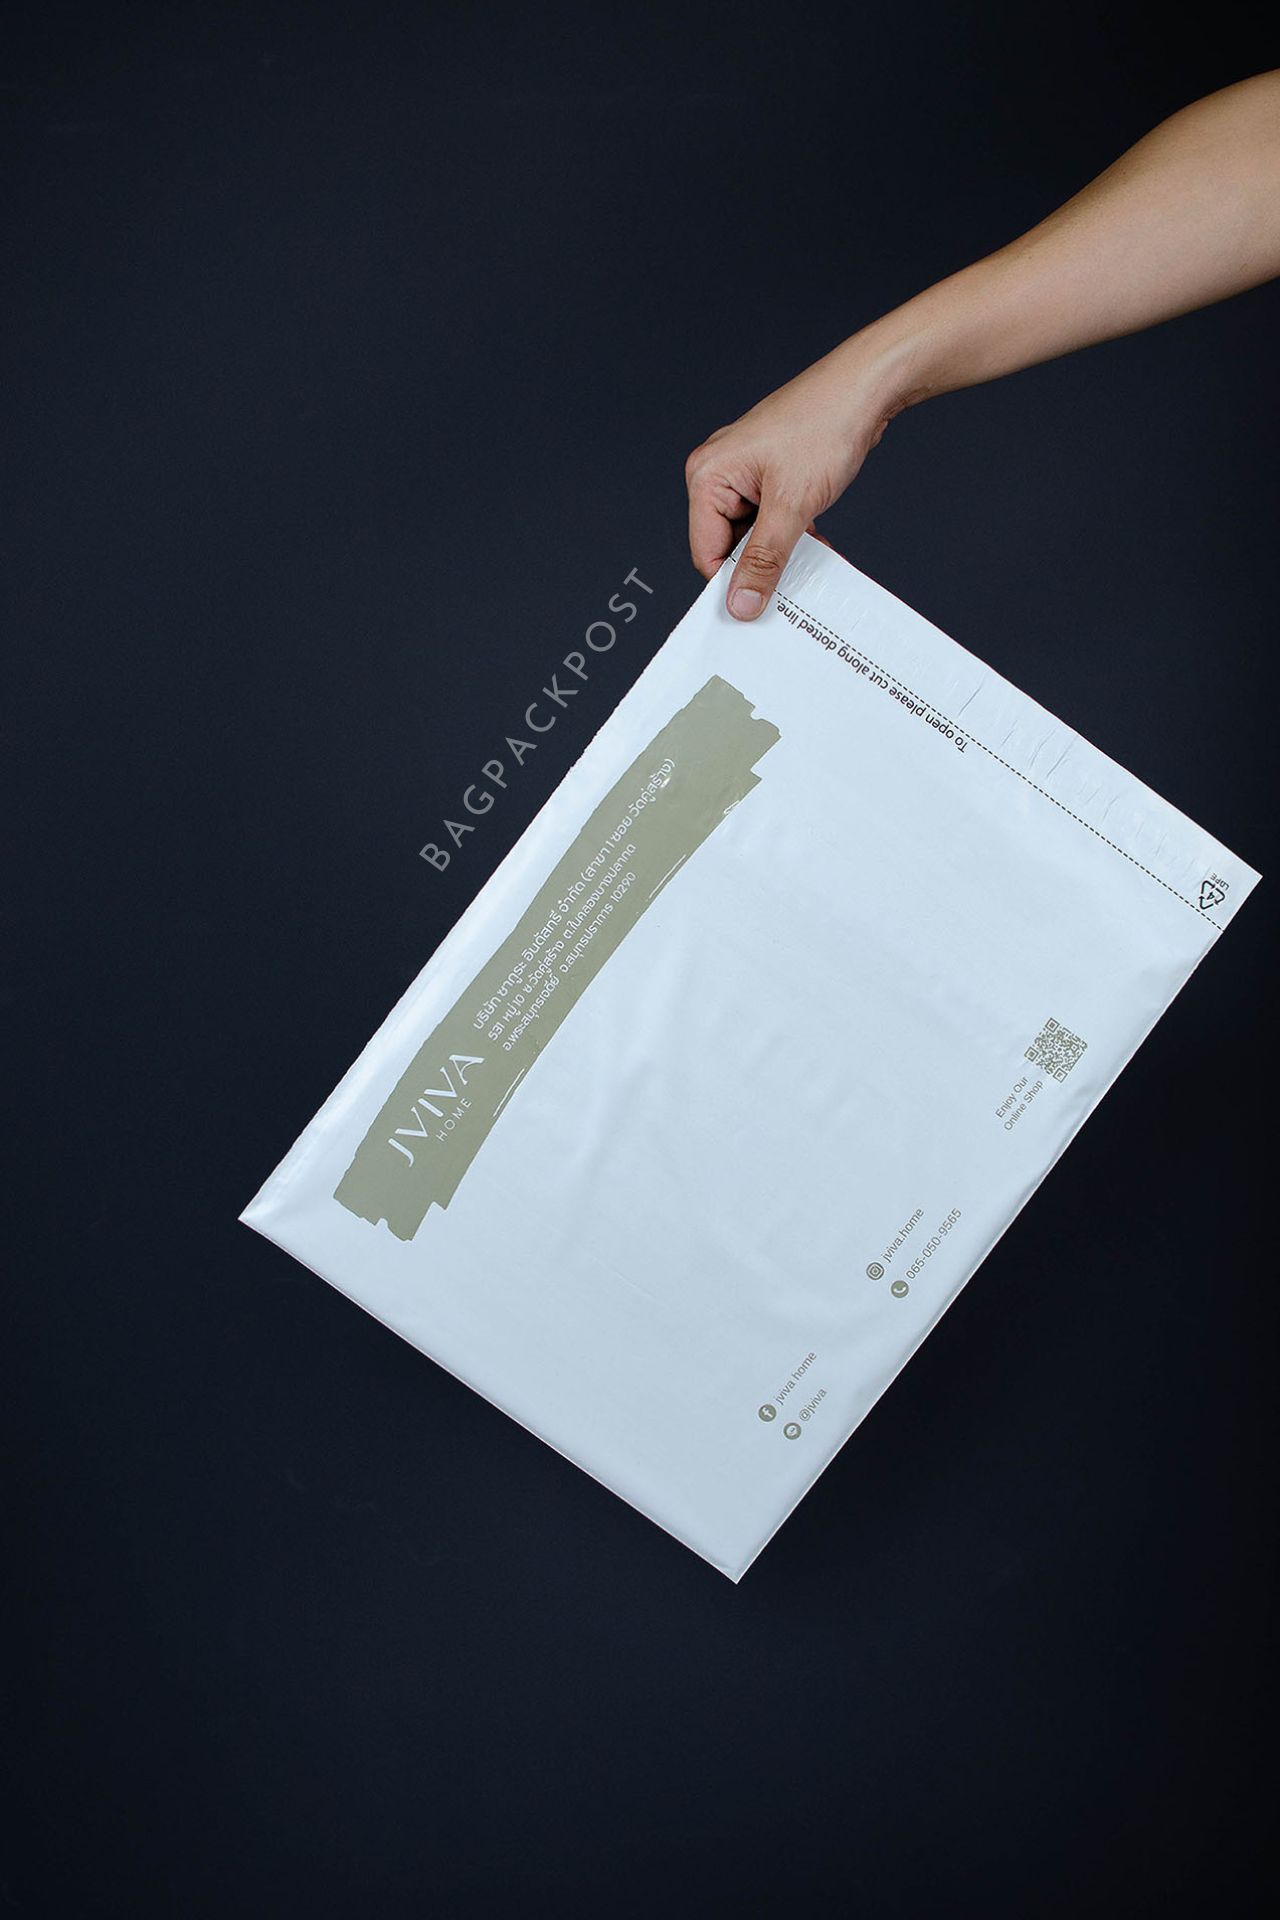 ผลิตถุงไปรษณีย์ ซองไปรษณีย์พิมพ์ลาย jviva ซองไปรษณีย์สีขาว ถุงไปรษณีย์พิมพ์ลาย 1 BagPackPost